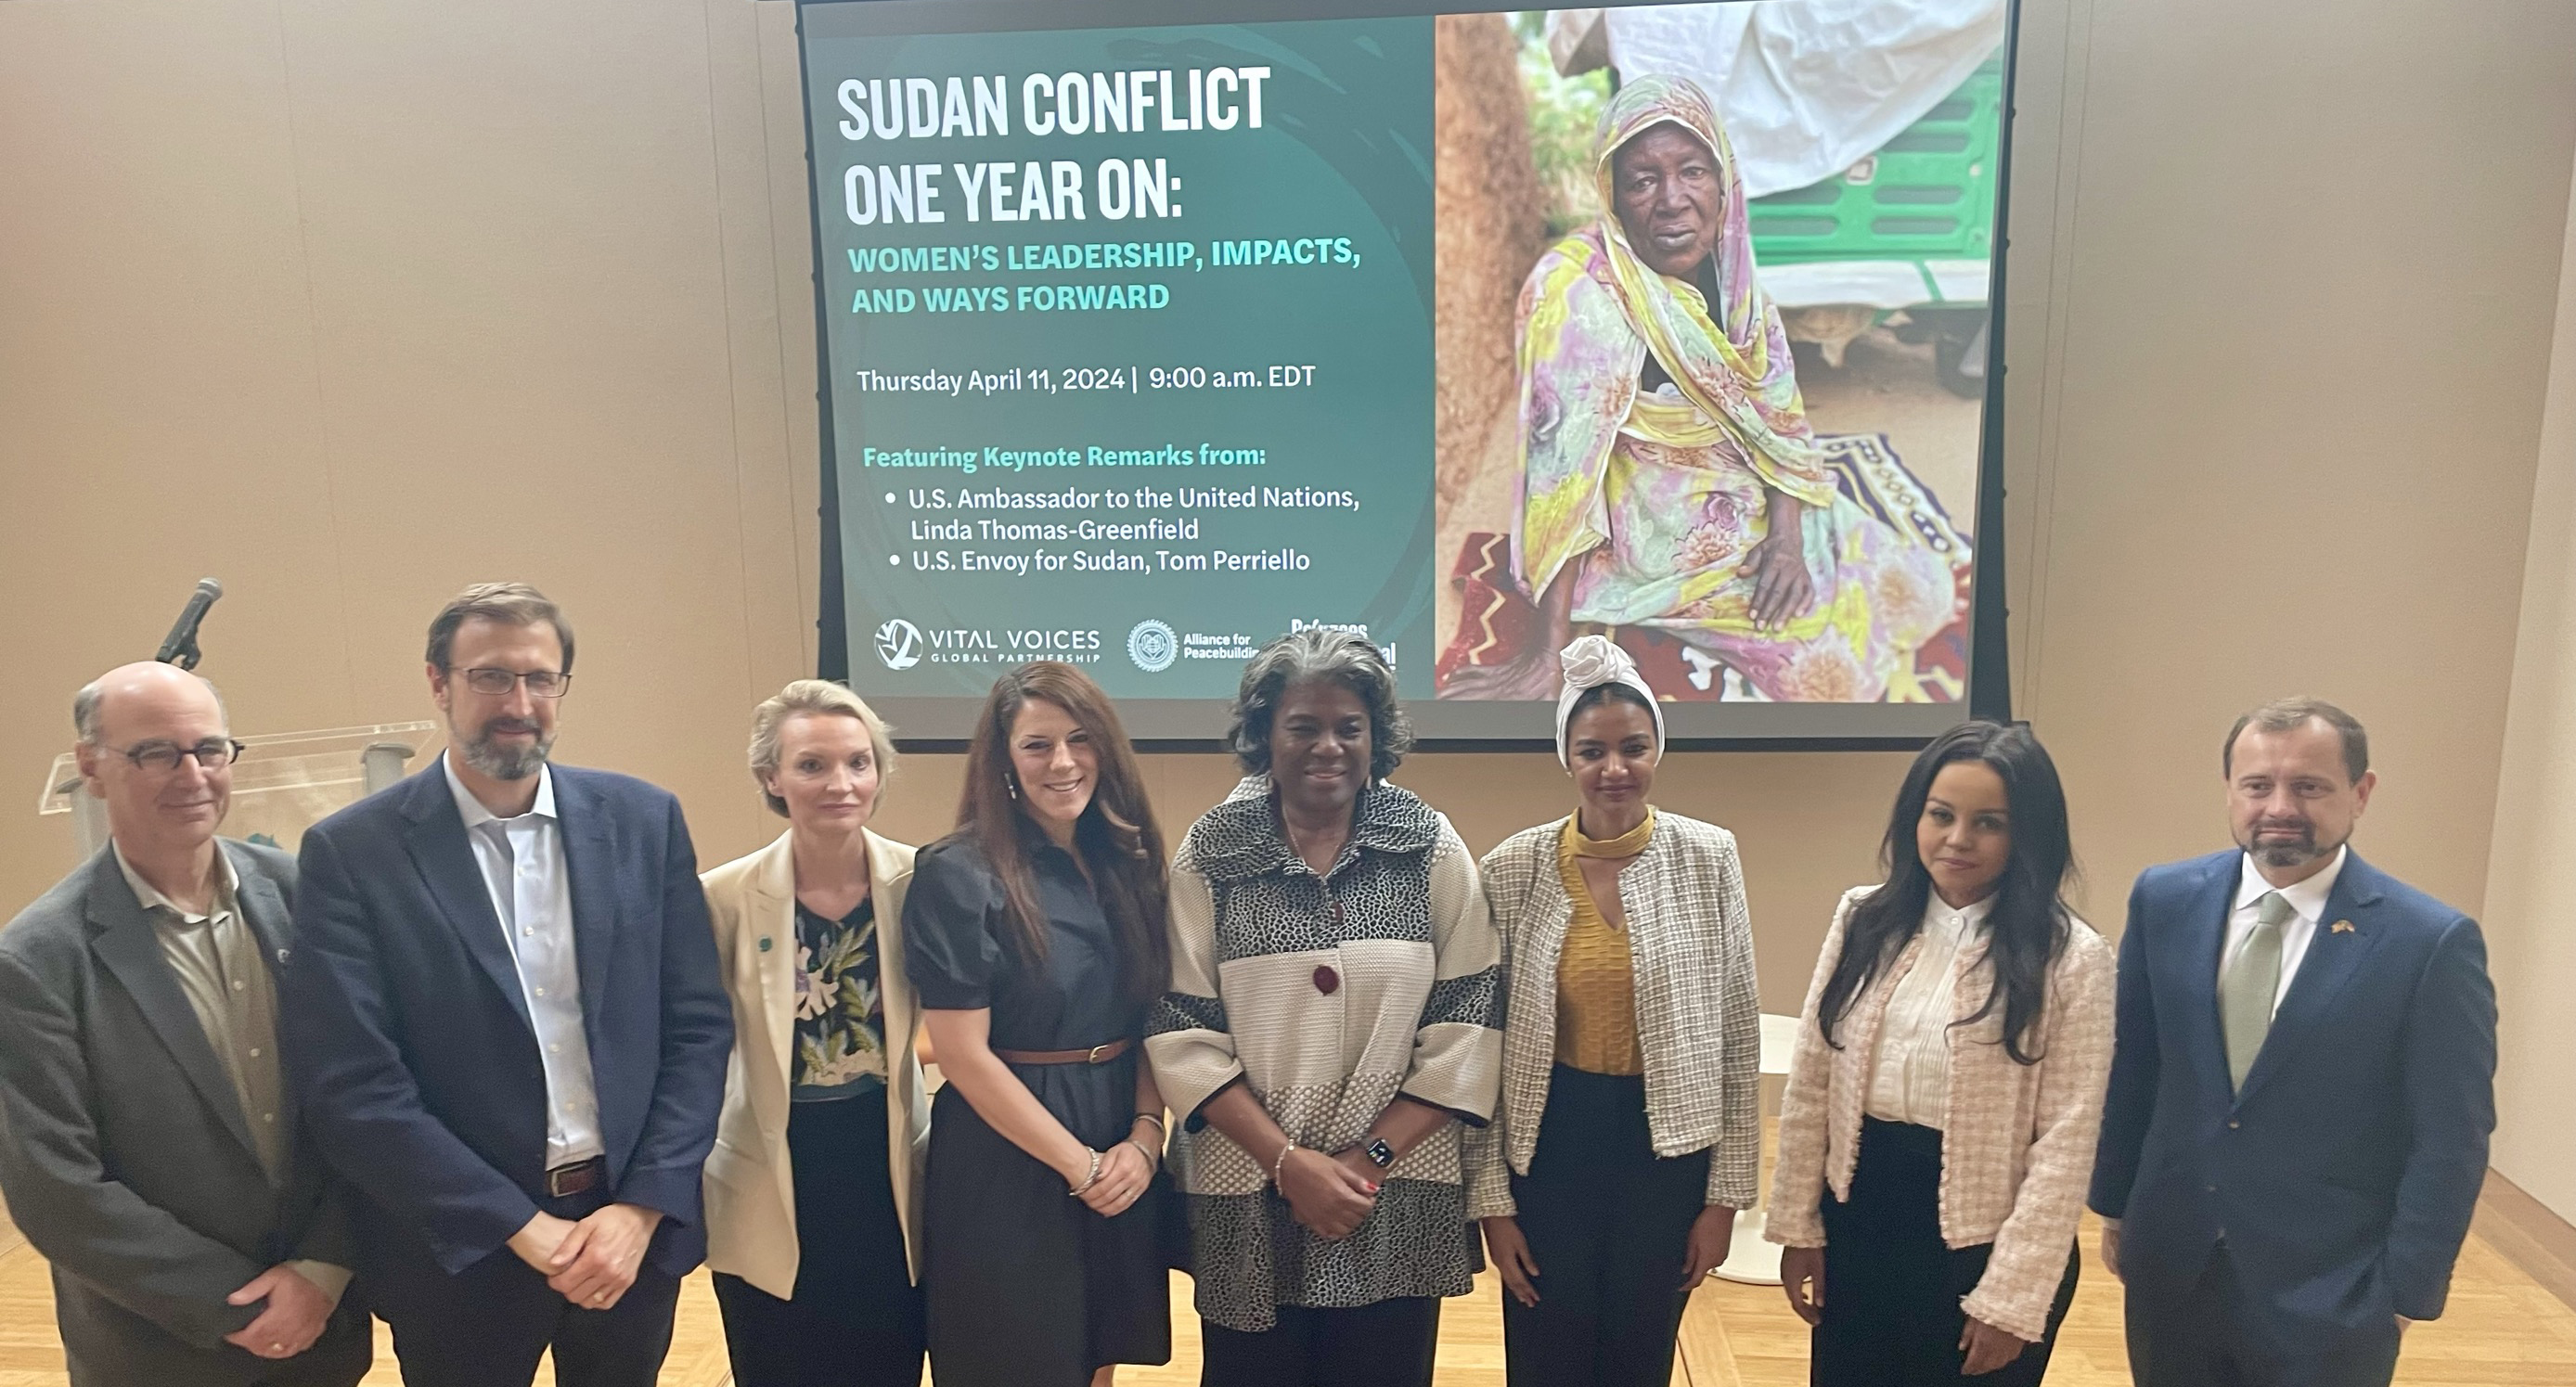 مندوبة امريكا لدى الامم المتحدة تشيد بدور النساء السودانيات